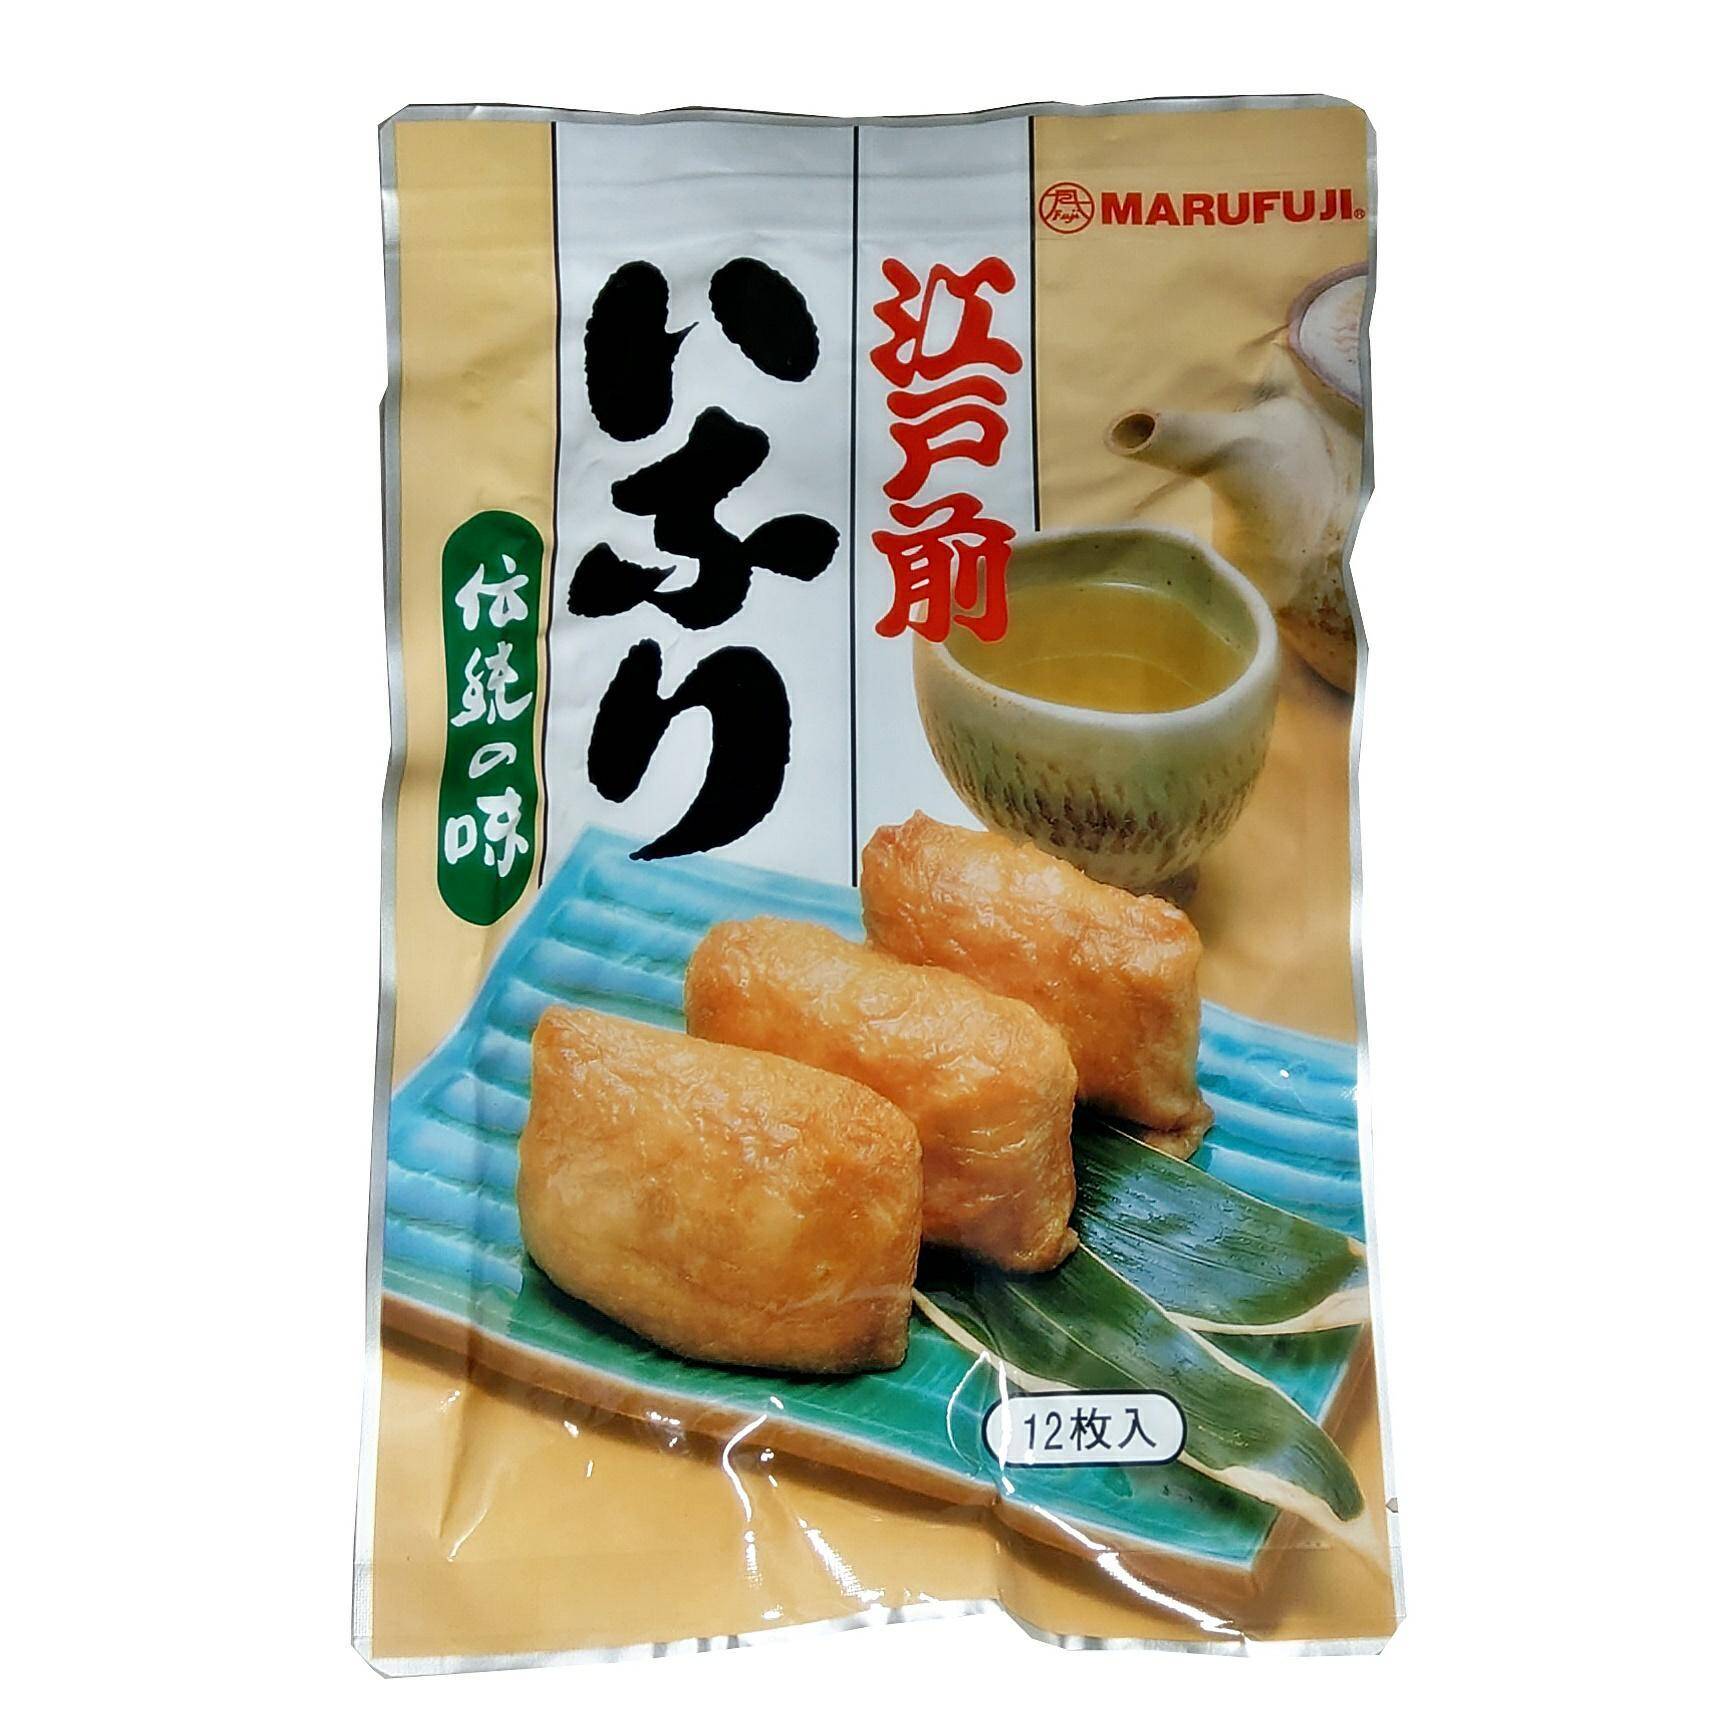 MARUFUJI Tofu